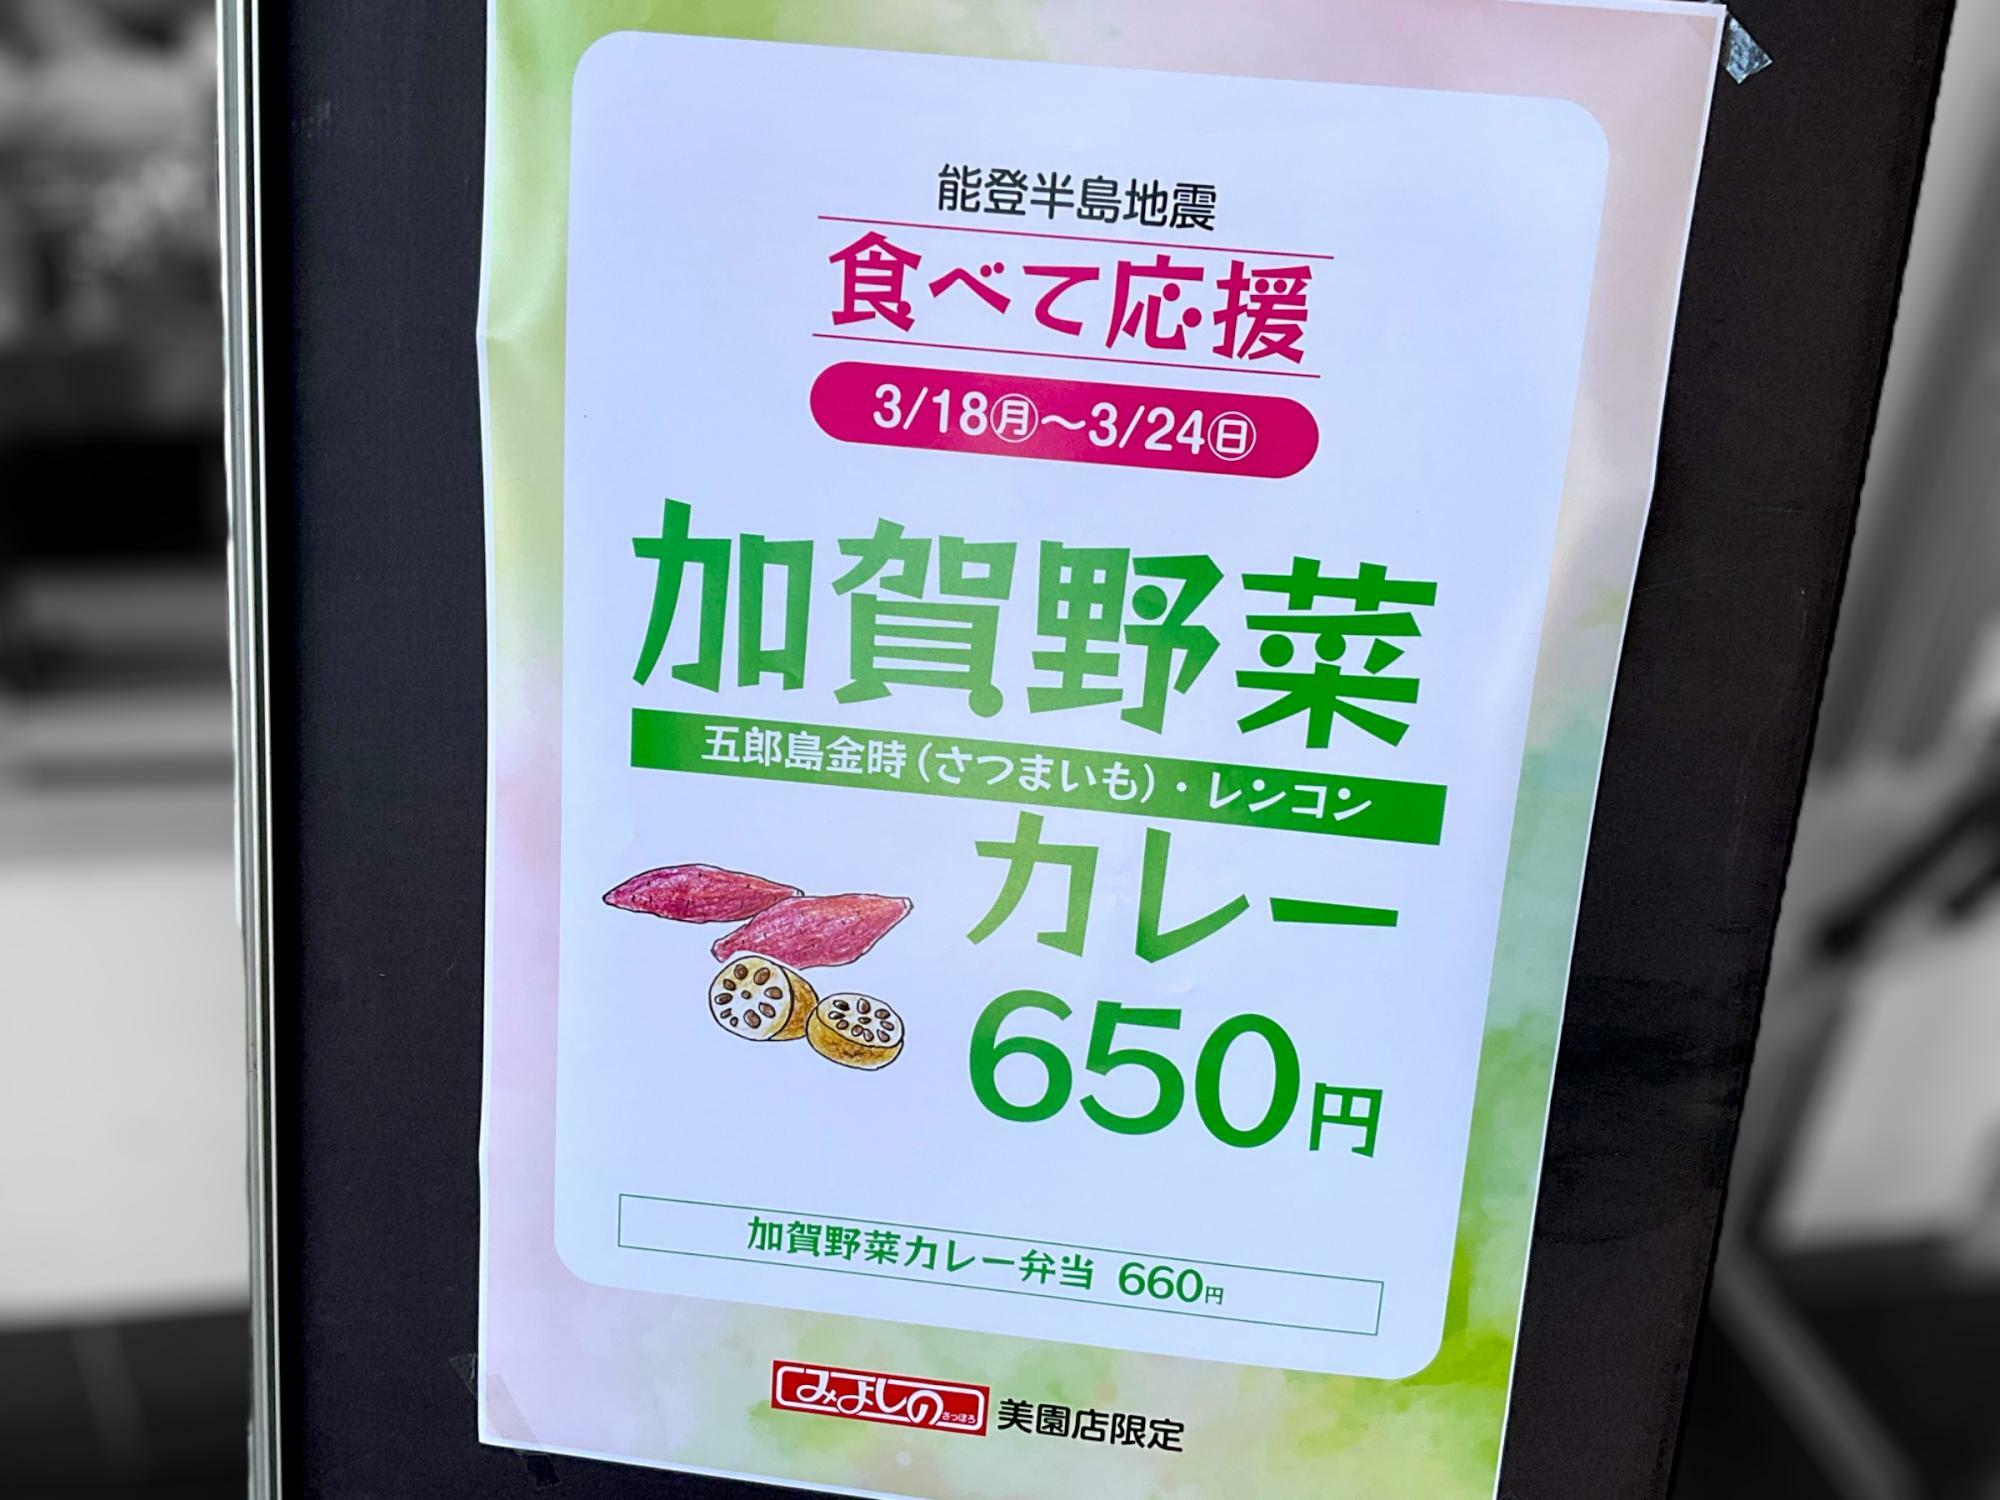 テイクアウトの加賀野菜カレー弁当もあり。660円